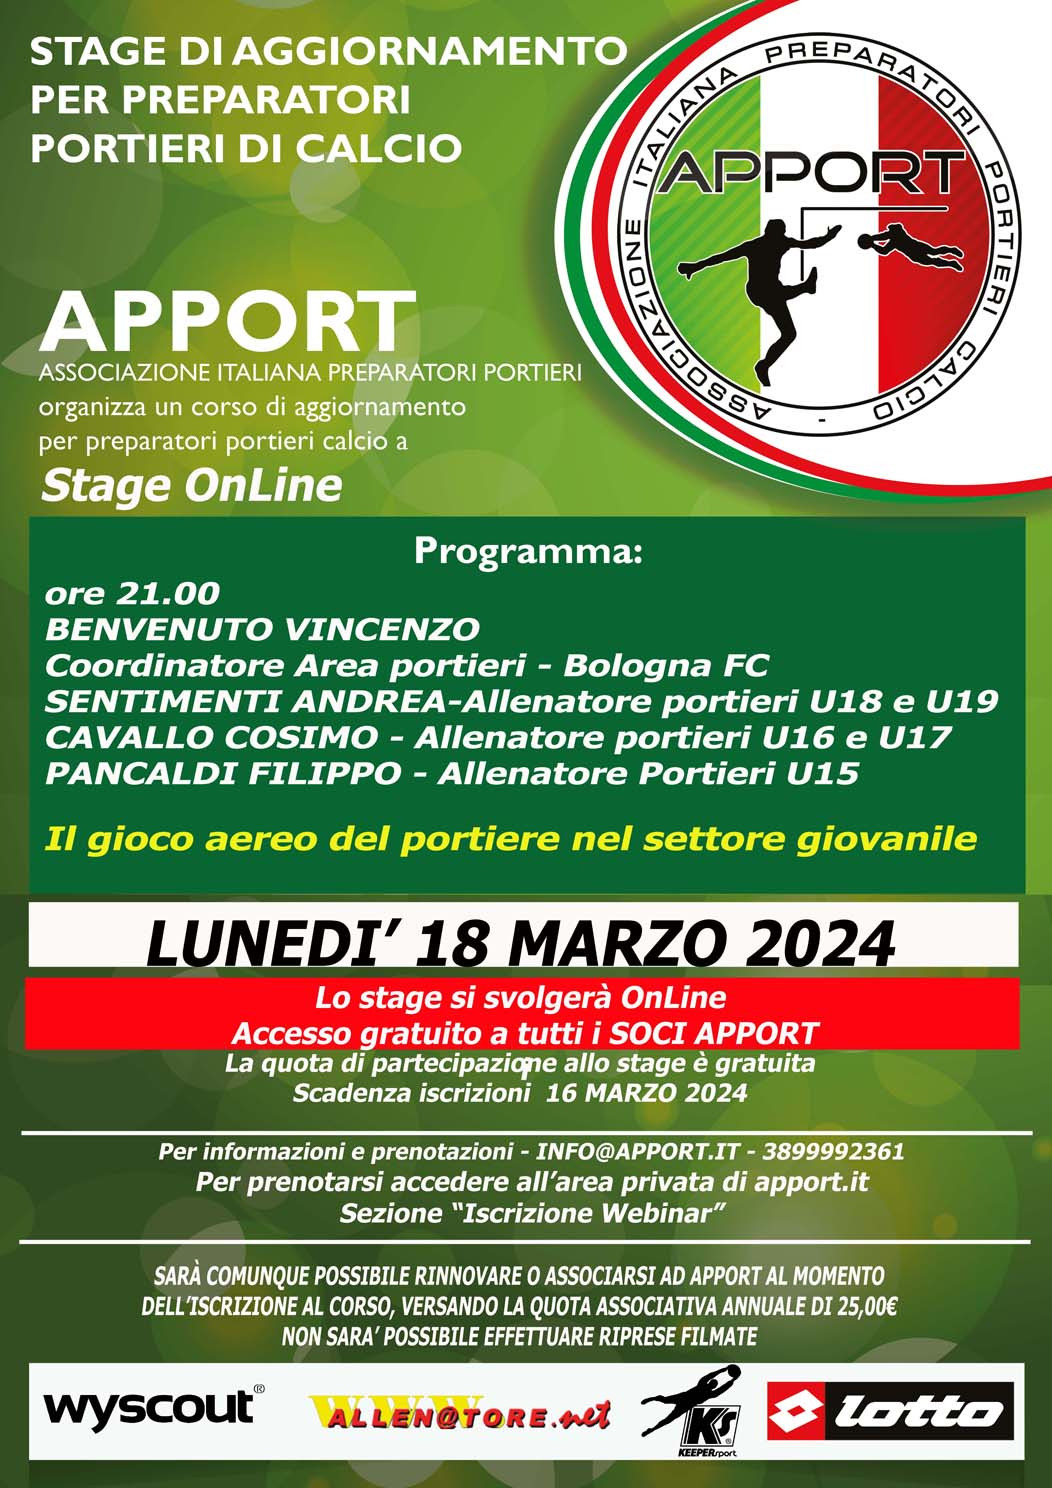 18 Marzo 2024 - Webinar con Vincenzo Benvenuto e i prep. portieri sett. giovanile Bologna